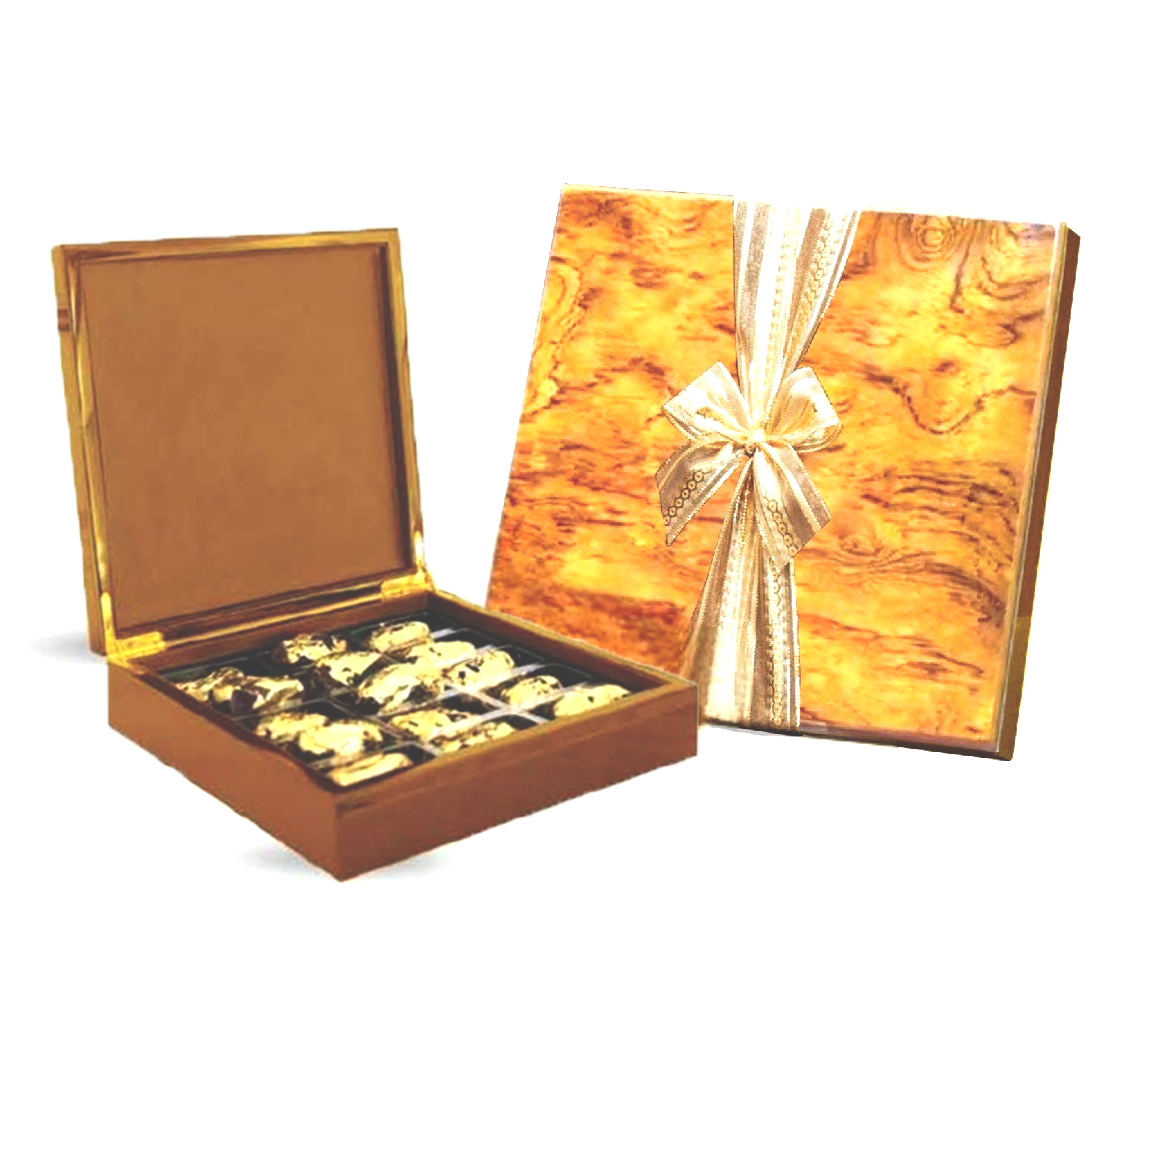 Desert Sands Wooden Golden Box 300gm